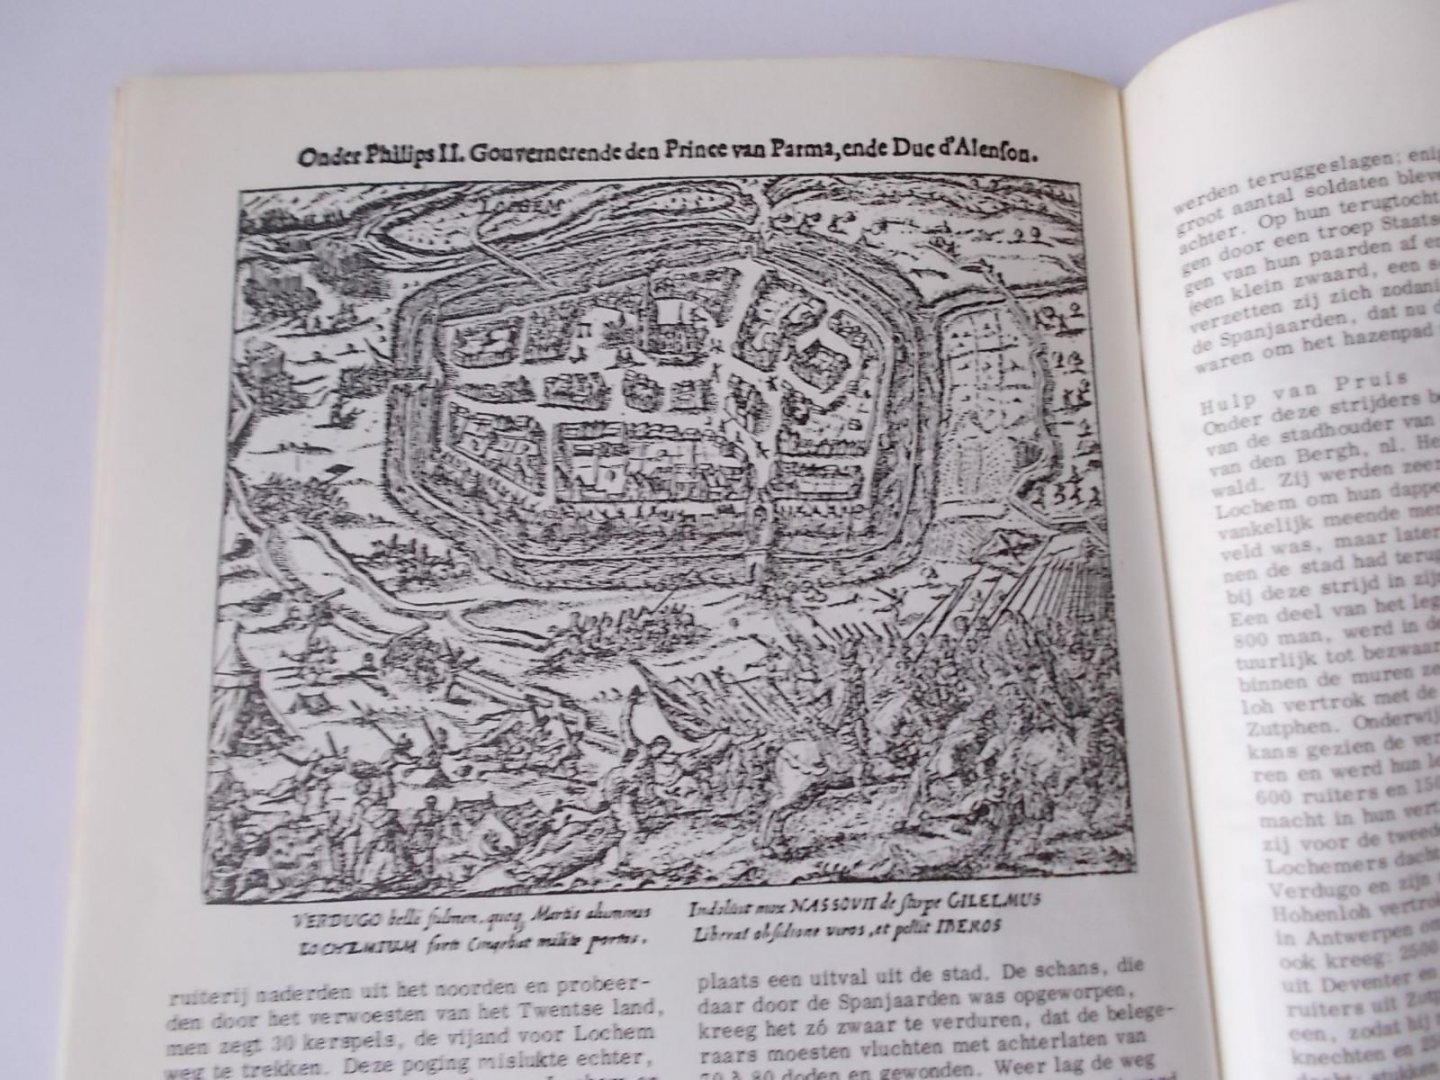 Boerkoel, G.A.W. - LOCHEM - Beleg en ontzet van Lochem in 1582